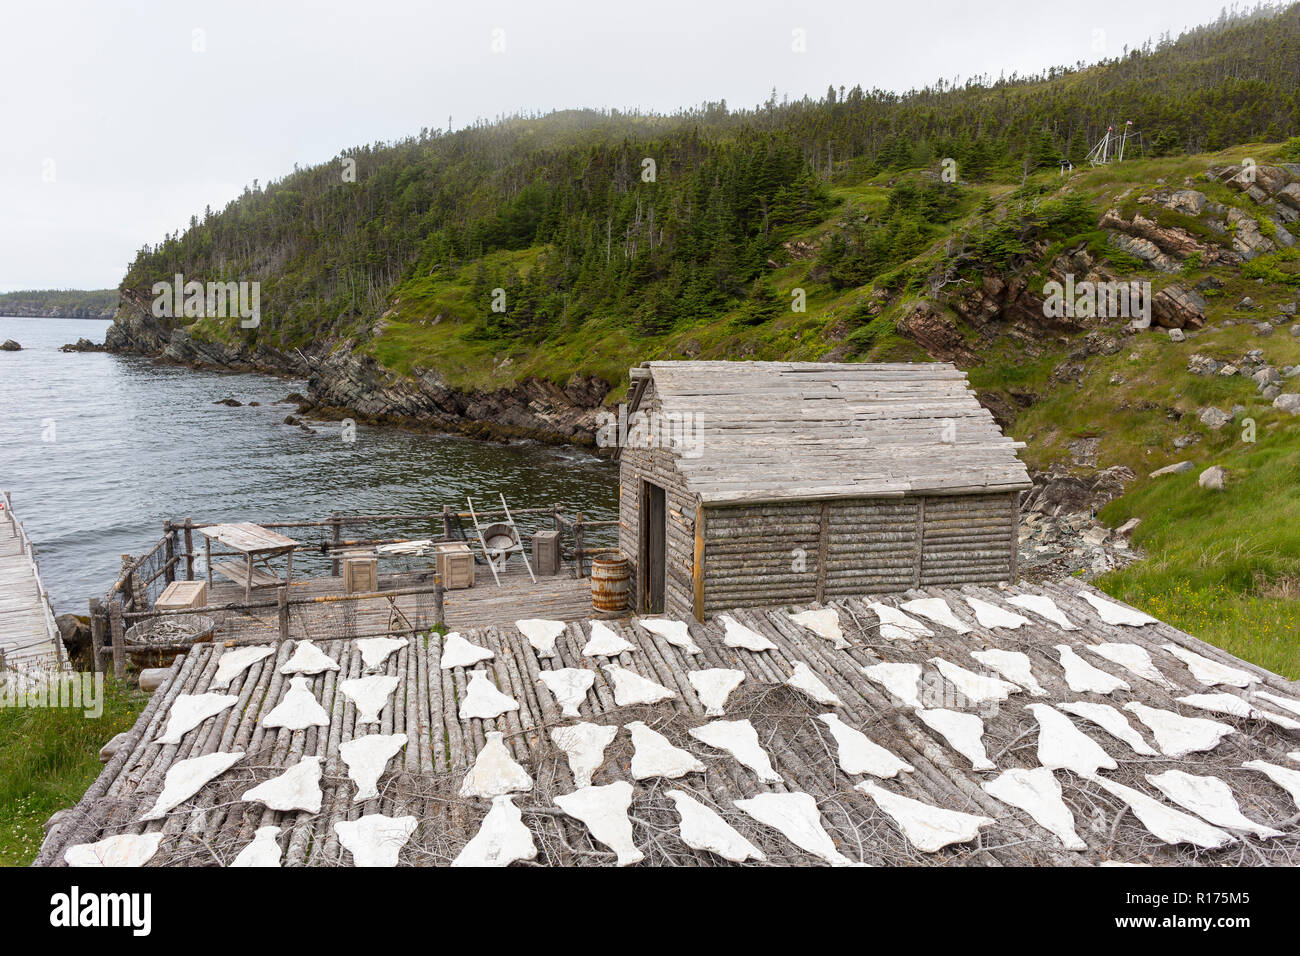 CAPE RANDOM, Neufundland, Kanada - Zufällige Passage Film, Replik des Fischerdorf. Kabeljaufilets sind künstliche Requisiten. Stockfoto